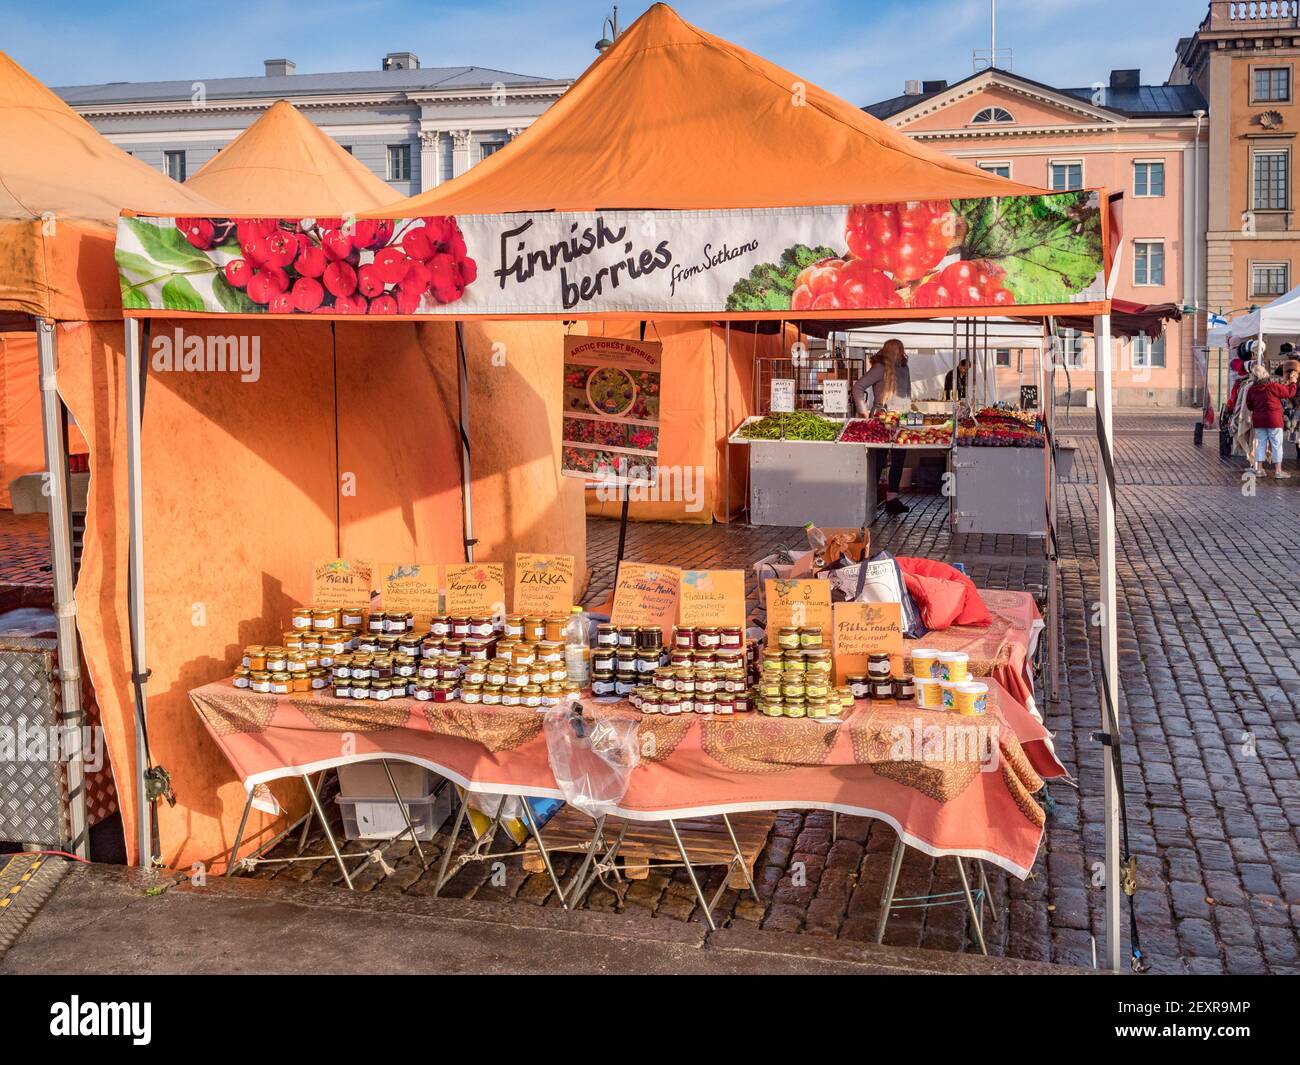 20 settembre 2018: Helsinki, Finlandia - Stalla di mercato presso un mercato agricolo nella Piazza del mercato, che vende marmellate di frutti di bosco locali, come il torbero Foto Stock